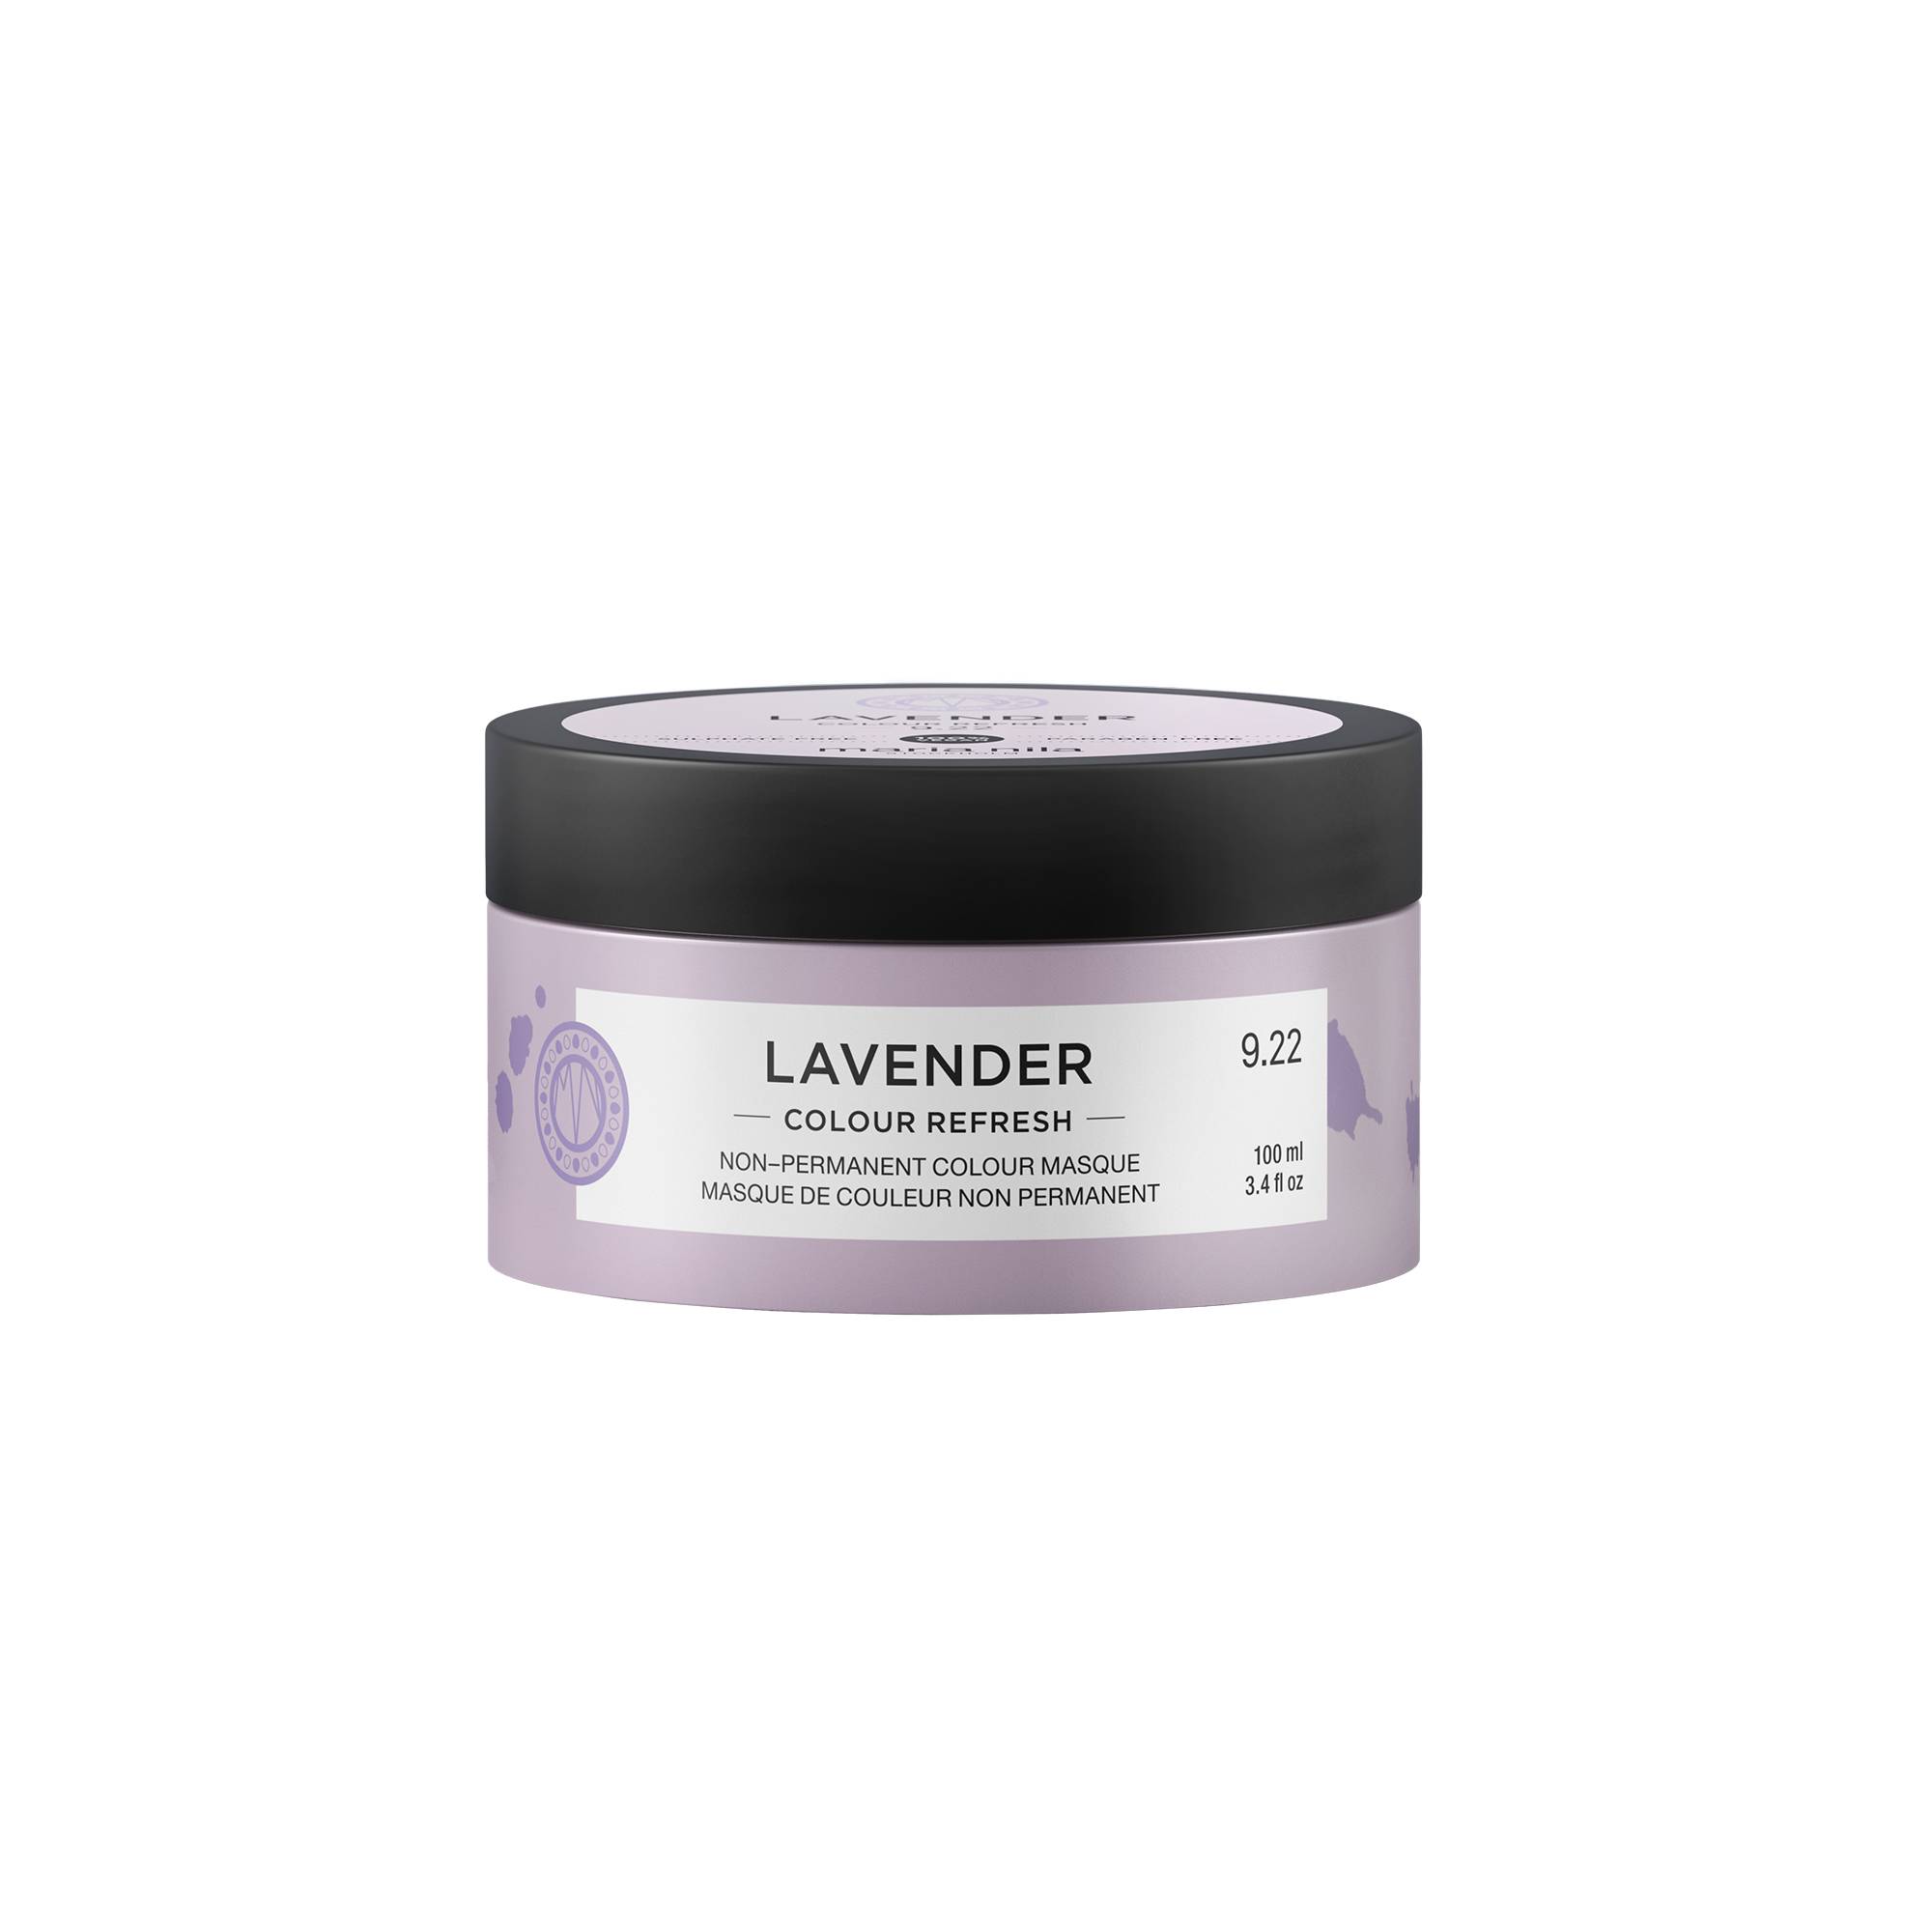 Masque repigmentant Colour refresh 9.22 Lavender de la marque Maria Nila Contenance 100ml - 1